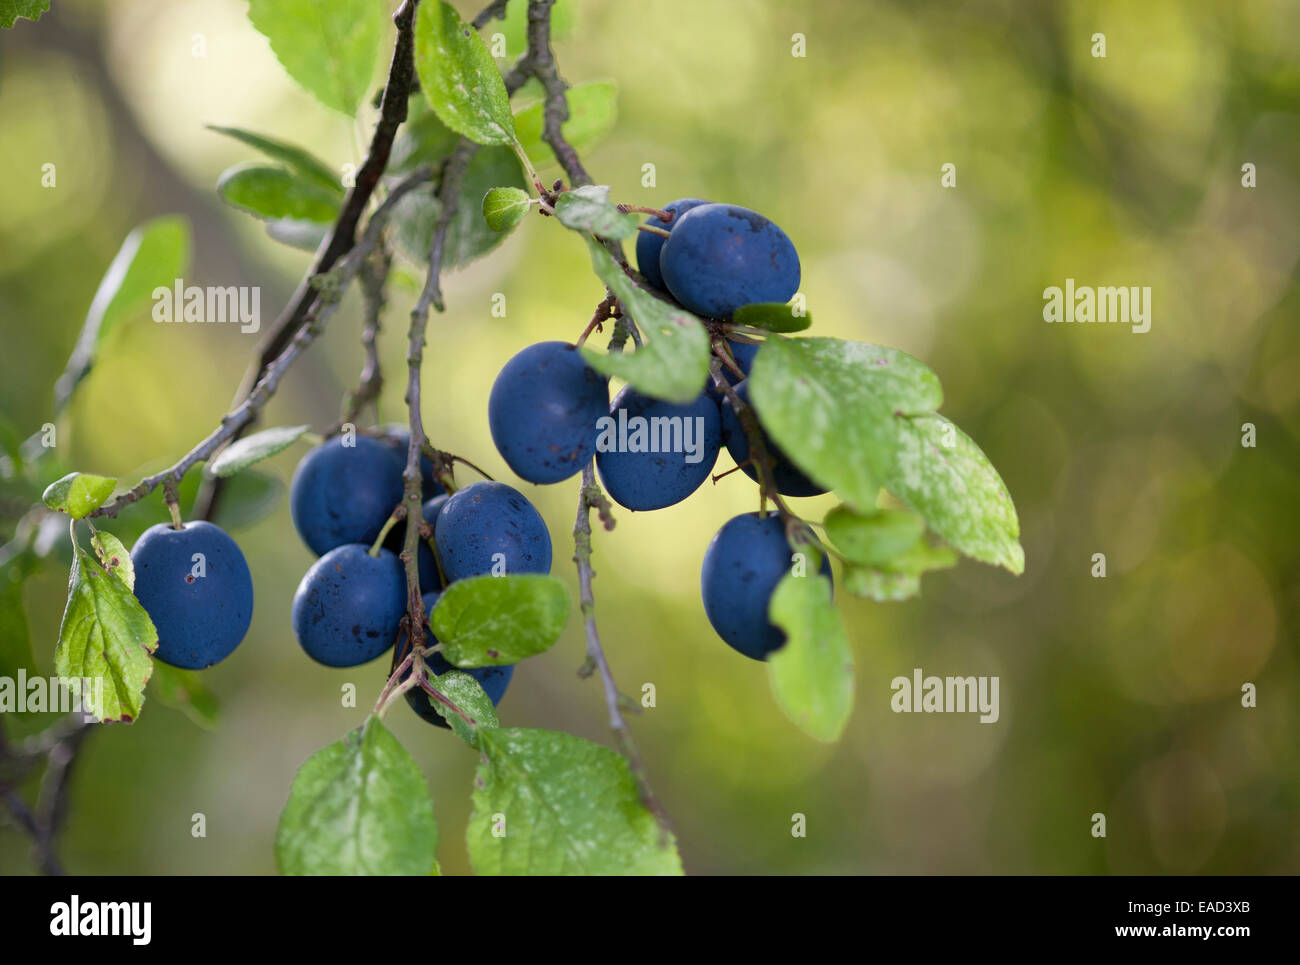 Damson plum, Prunus domestica L. subsp. insititia, Blue subject. Stock Photo